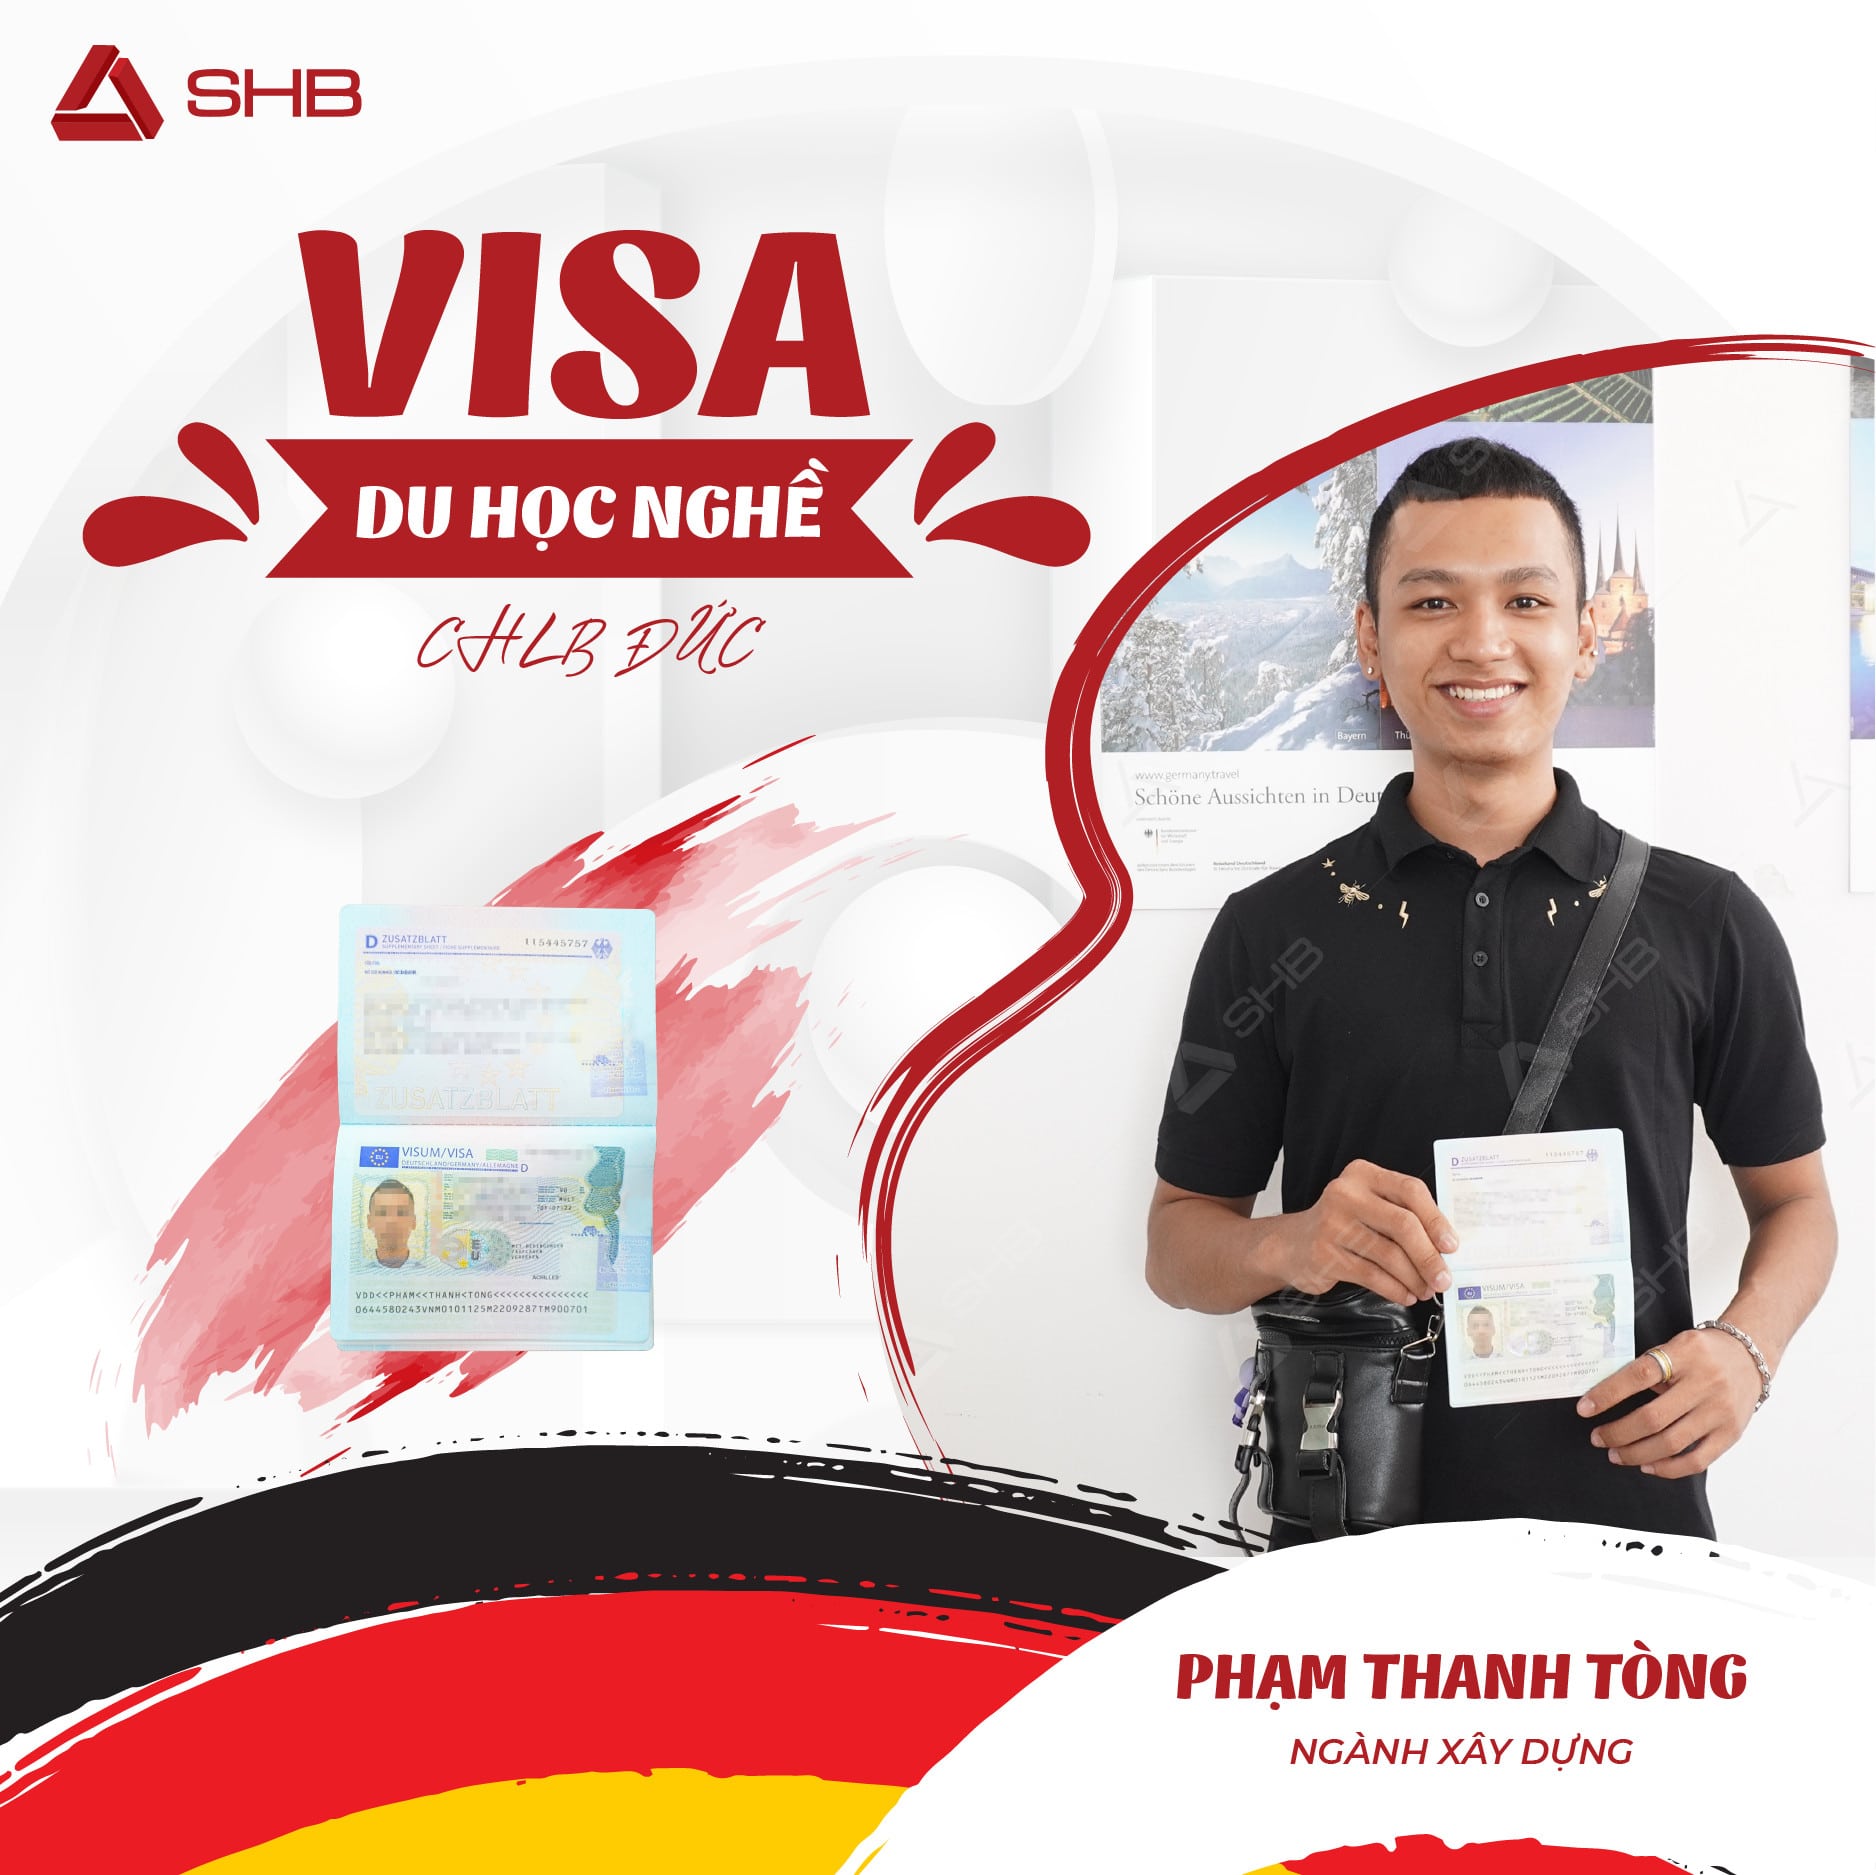 Visa Shb Du Học Nghề đức (2)